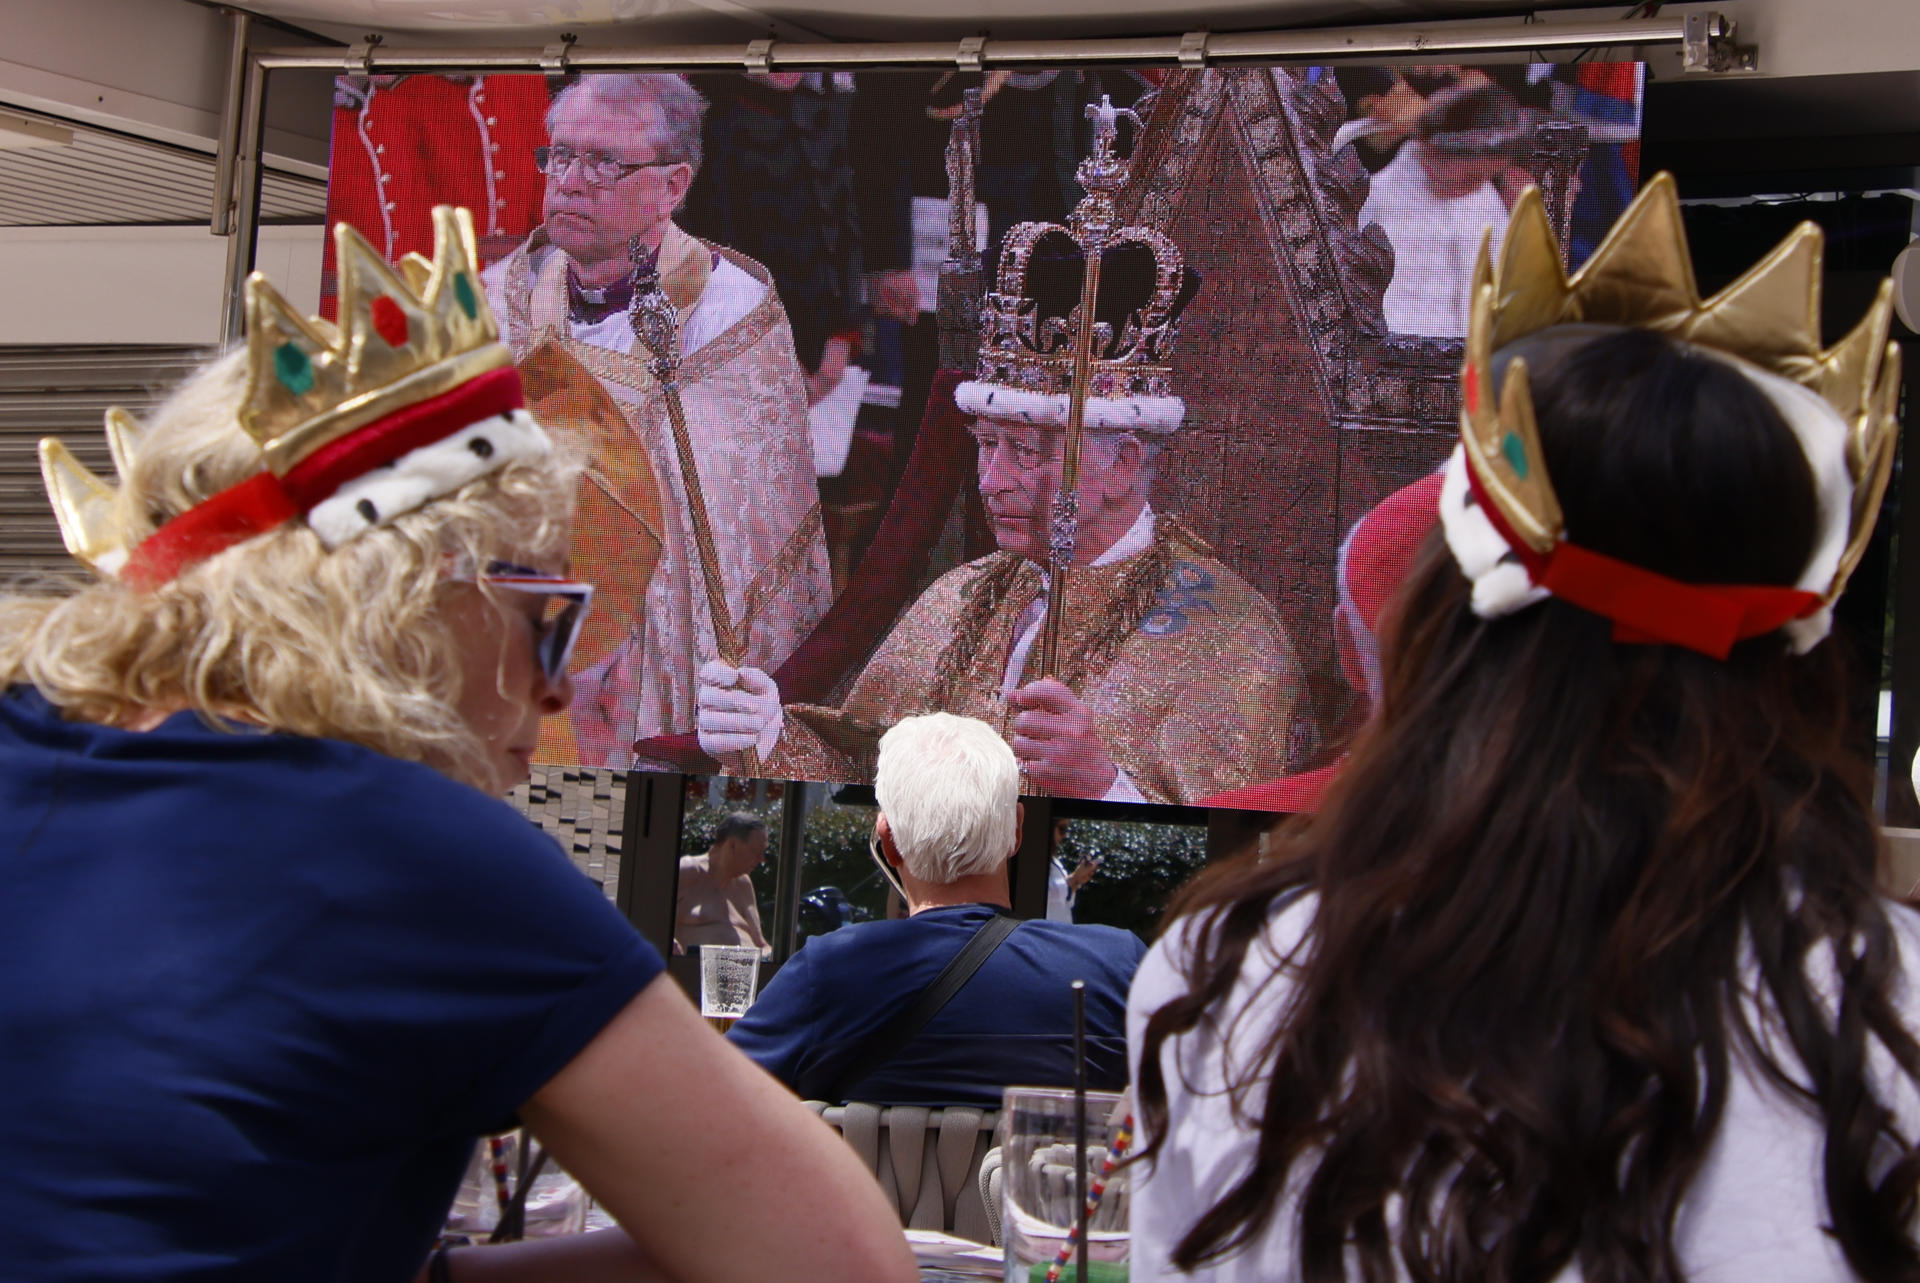 Un grup de turistes britànics dissabte passat a Magaluf seguint en directe la coronació del rei Carles III, amb corones de joguina al cap. EFE/CATI CLADERA